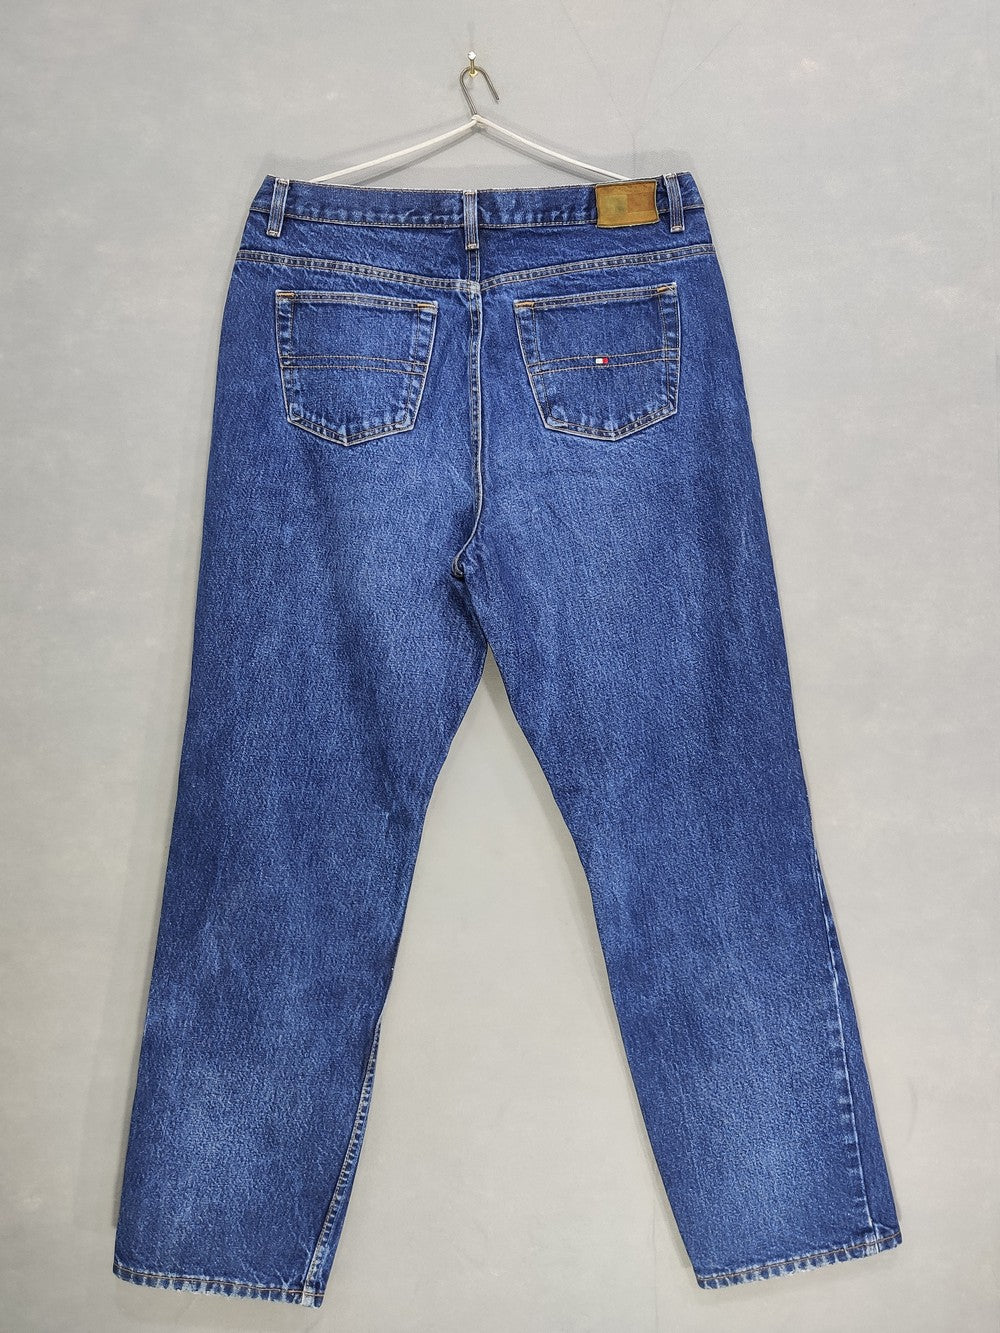 Tommy Hilfiger Branded Original Denim Jeans For Men